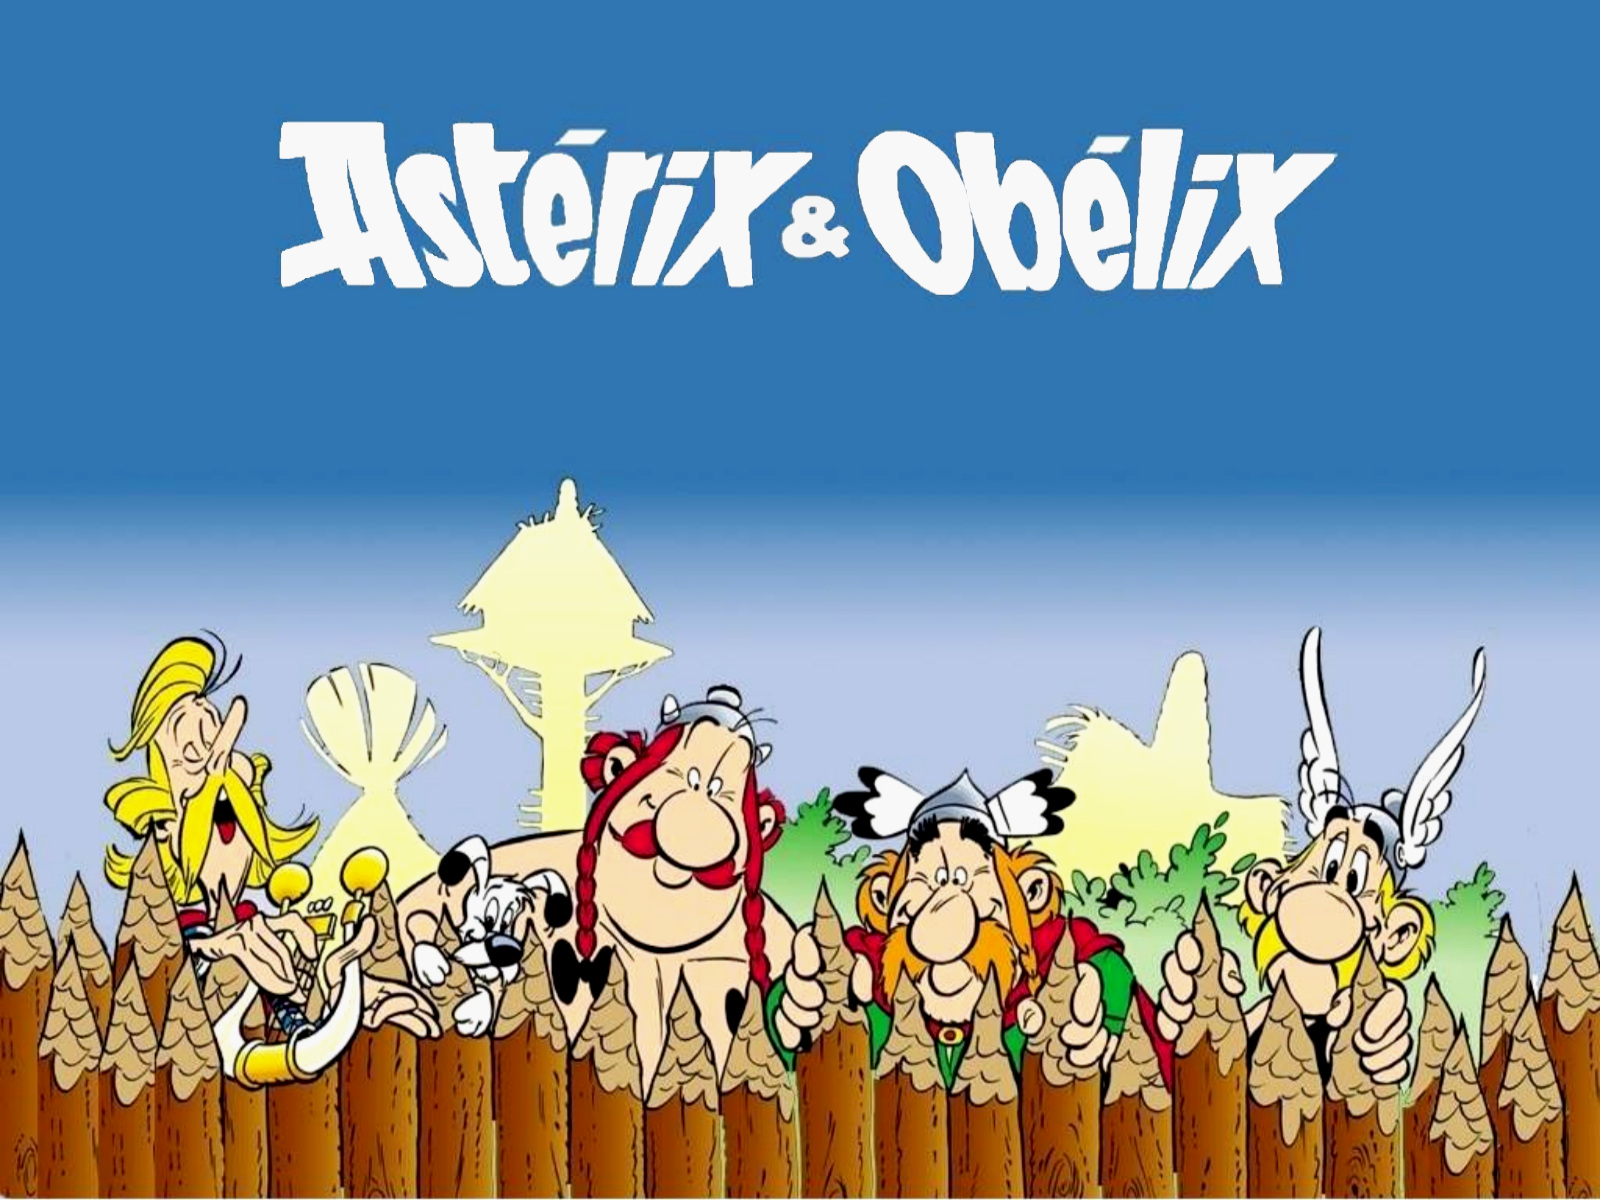 1000+ images about Asterix en Obelix on Pinterest | Dutch ...